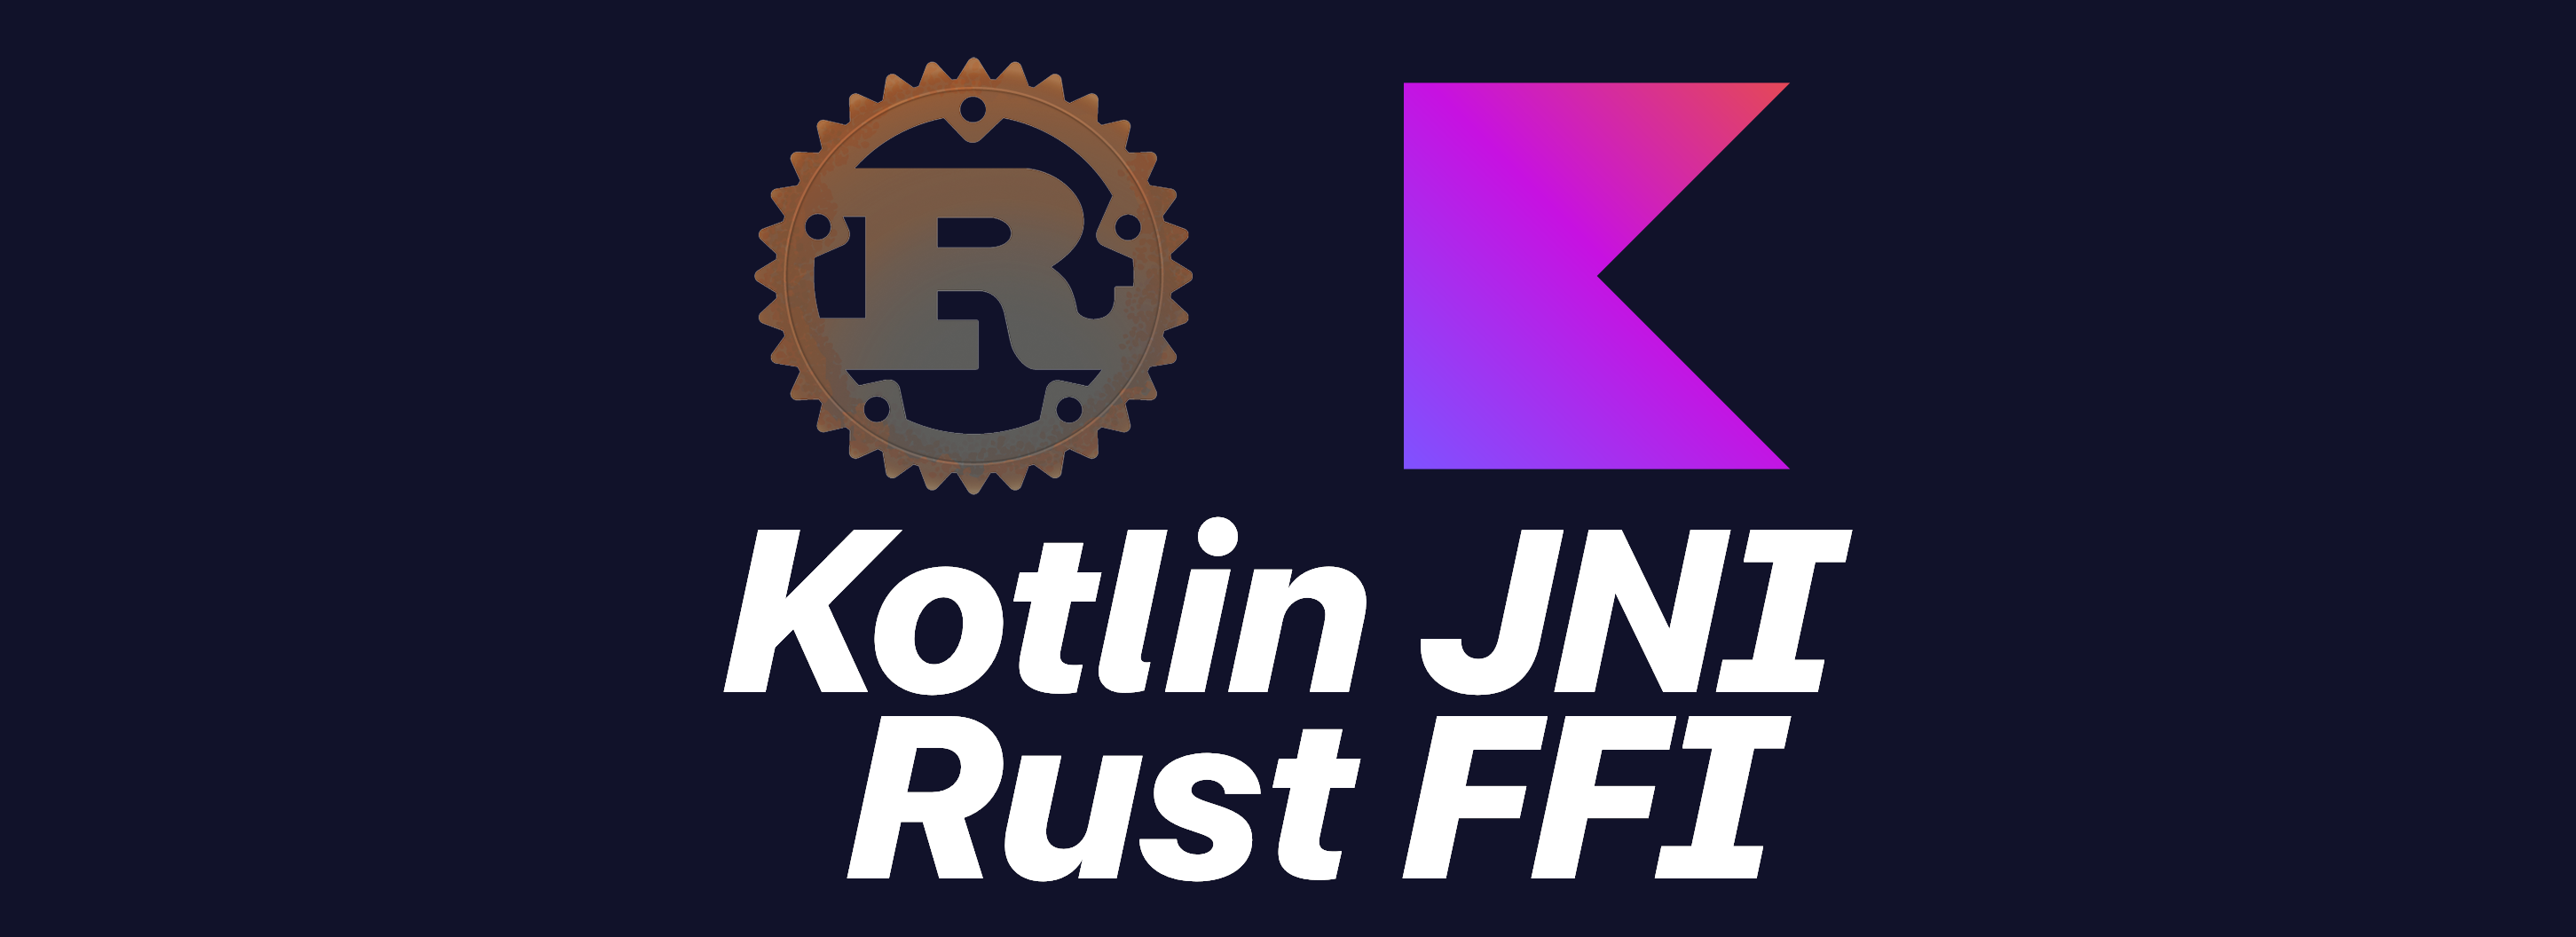 通过 JNI 实现 Kotlin 调用 Rust